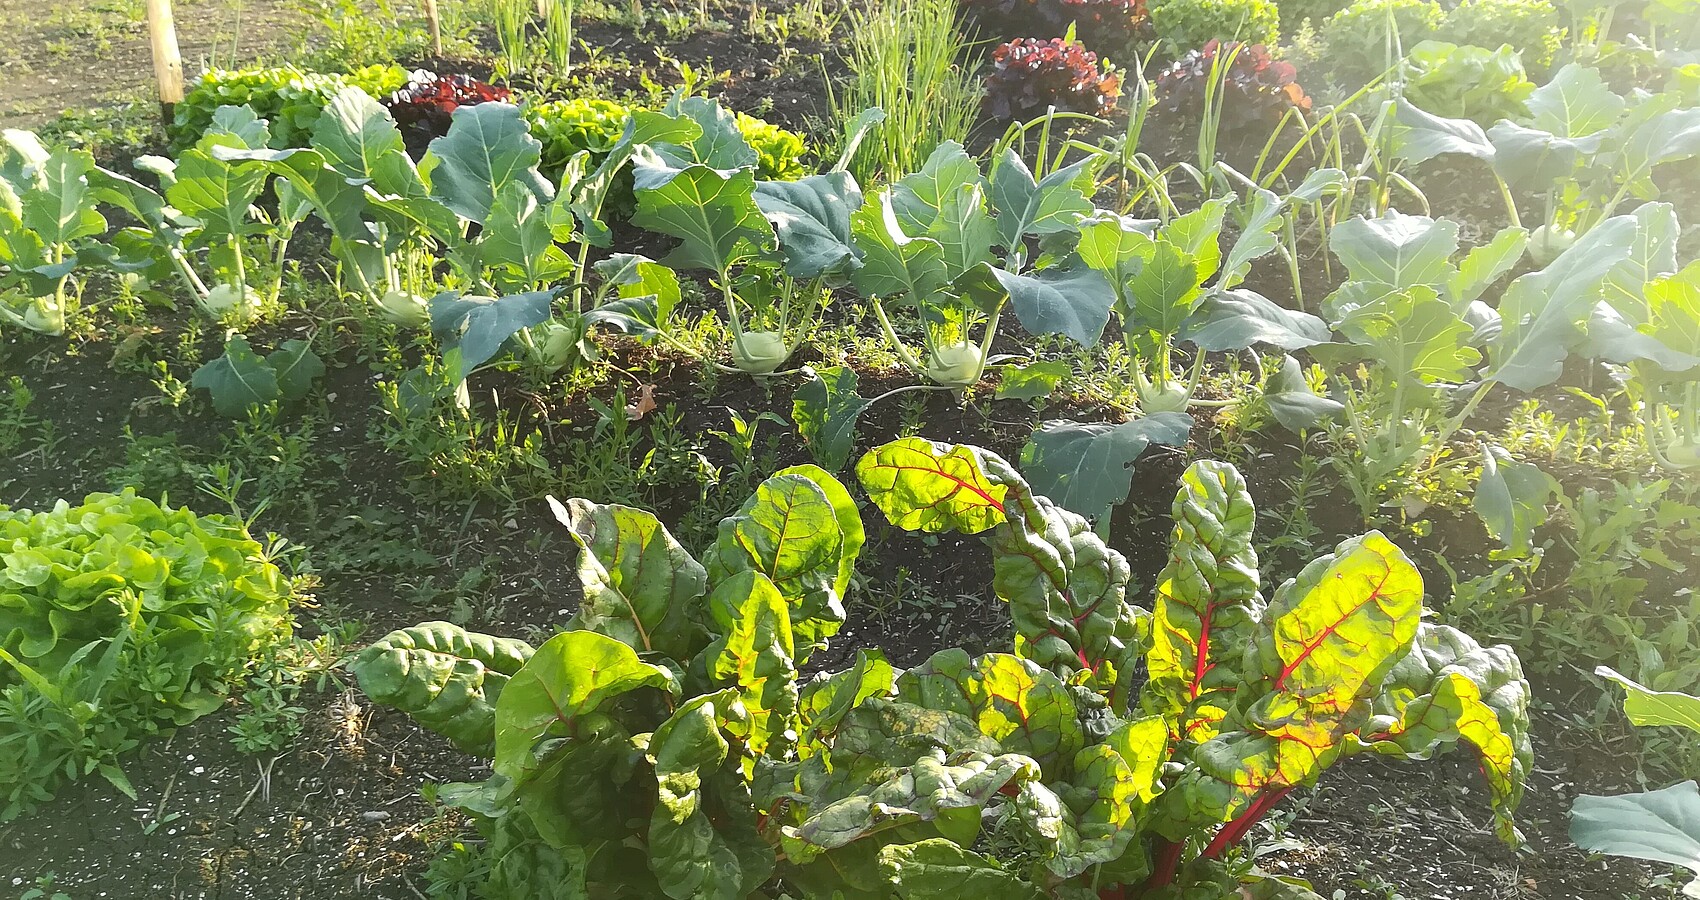 Nutzgartenwerkstatt am Biosphärenzentrum; das Bild zeigt angebautes Gemüse zum Beispiel Mangold Kohlrabi und verschiedene Salat